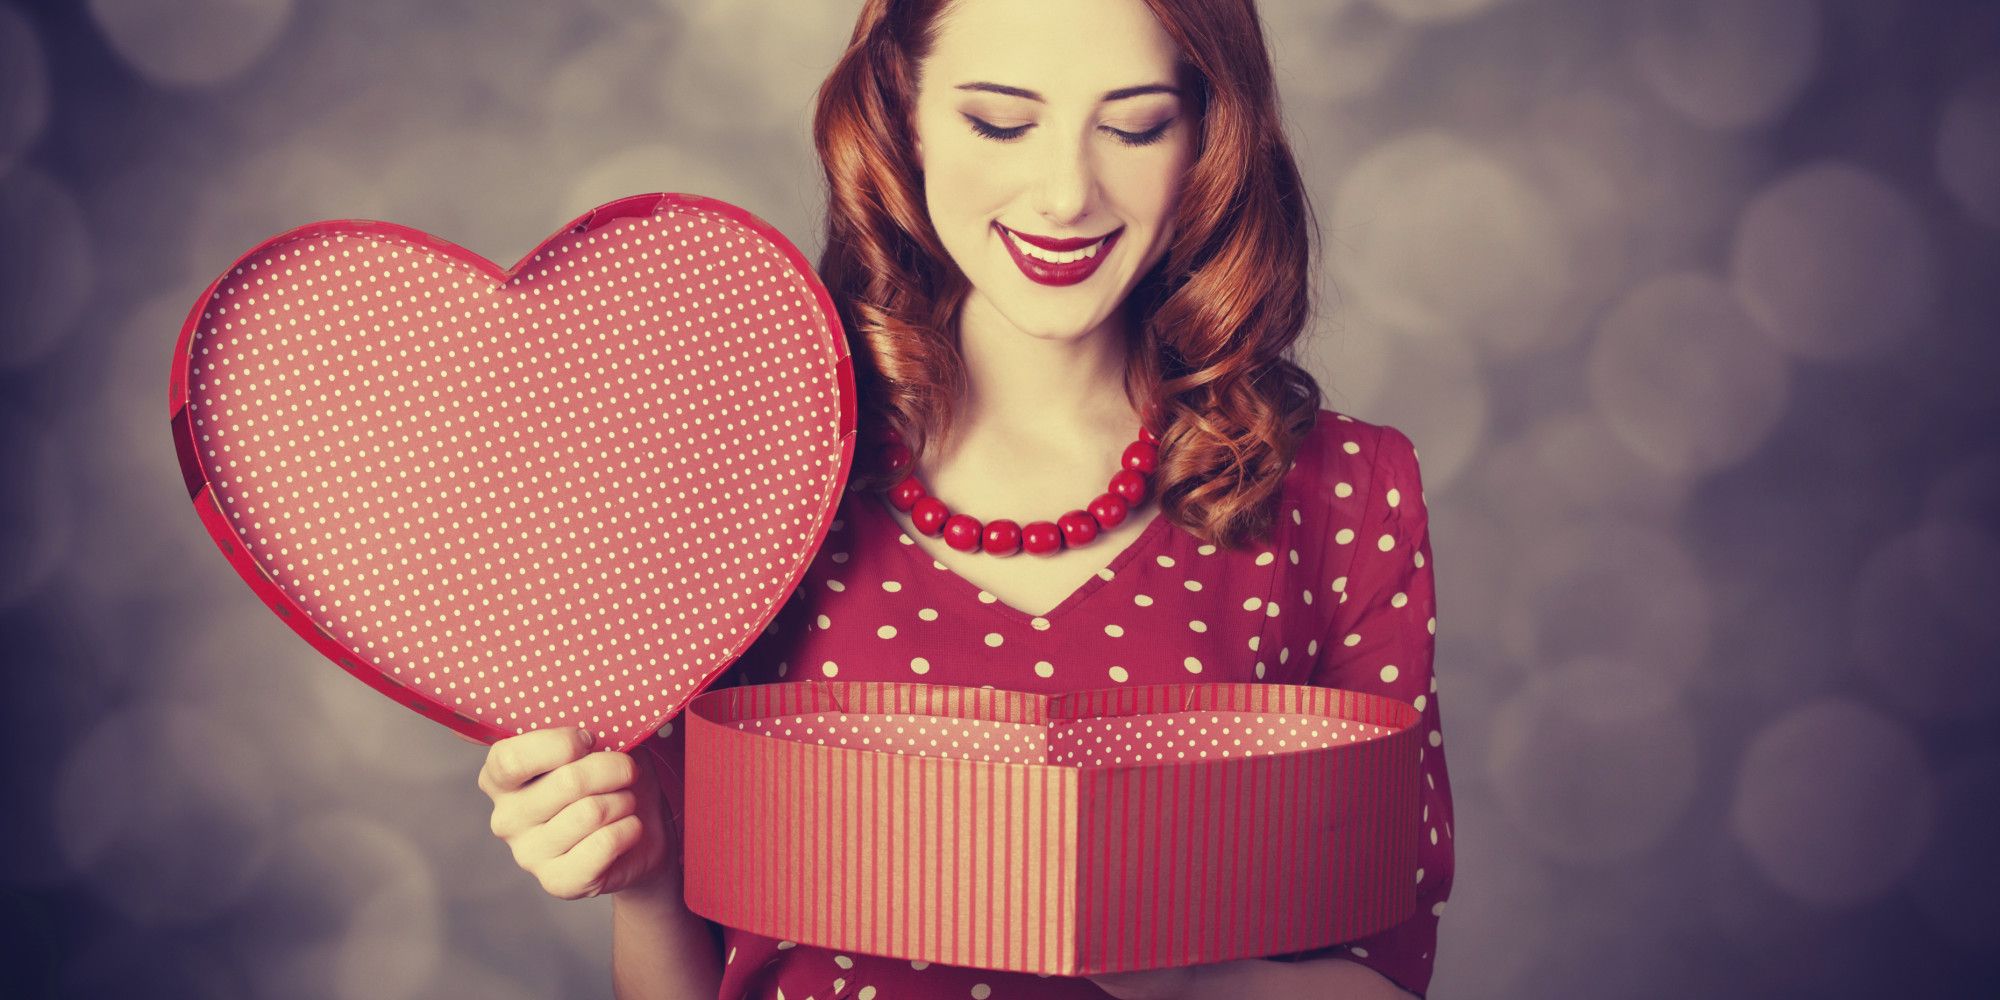 San Valentino: quello che una donna NON vuole ricevere in regalo